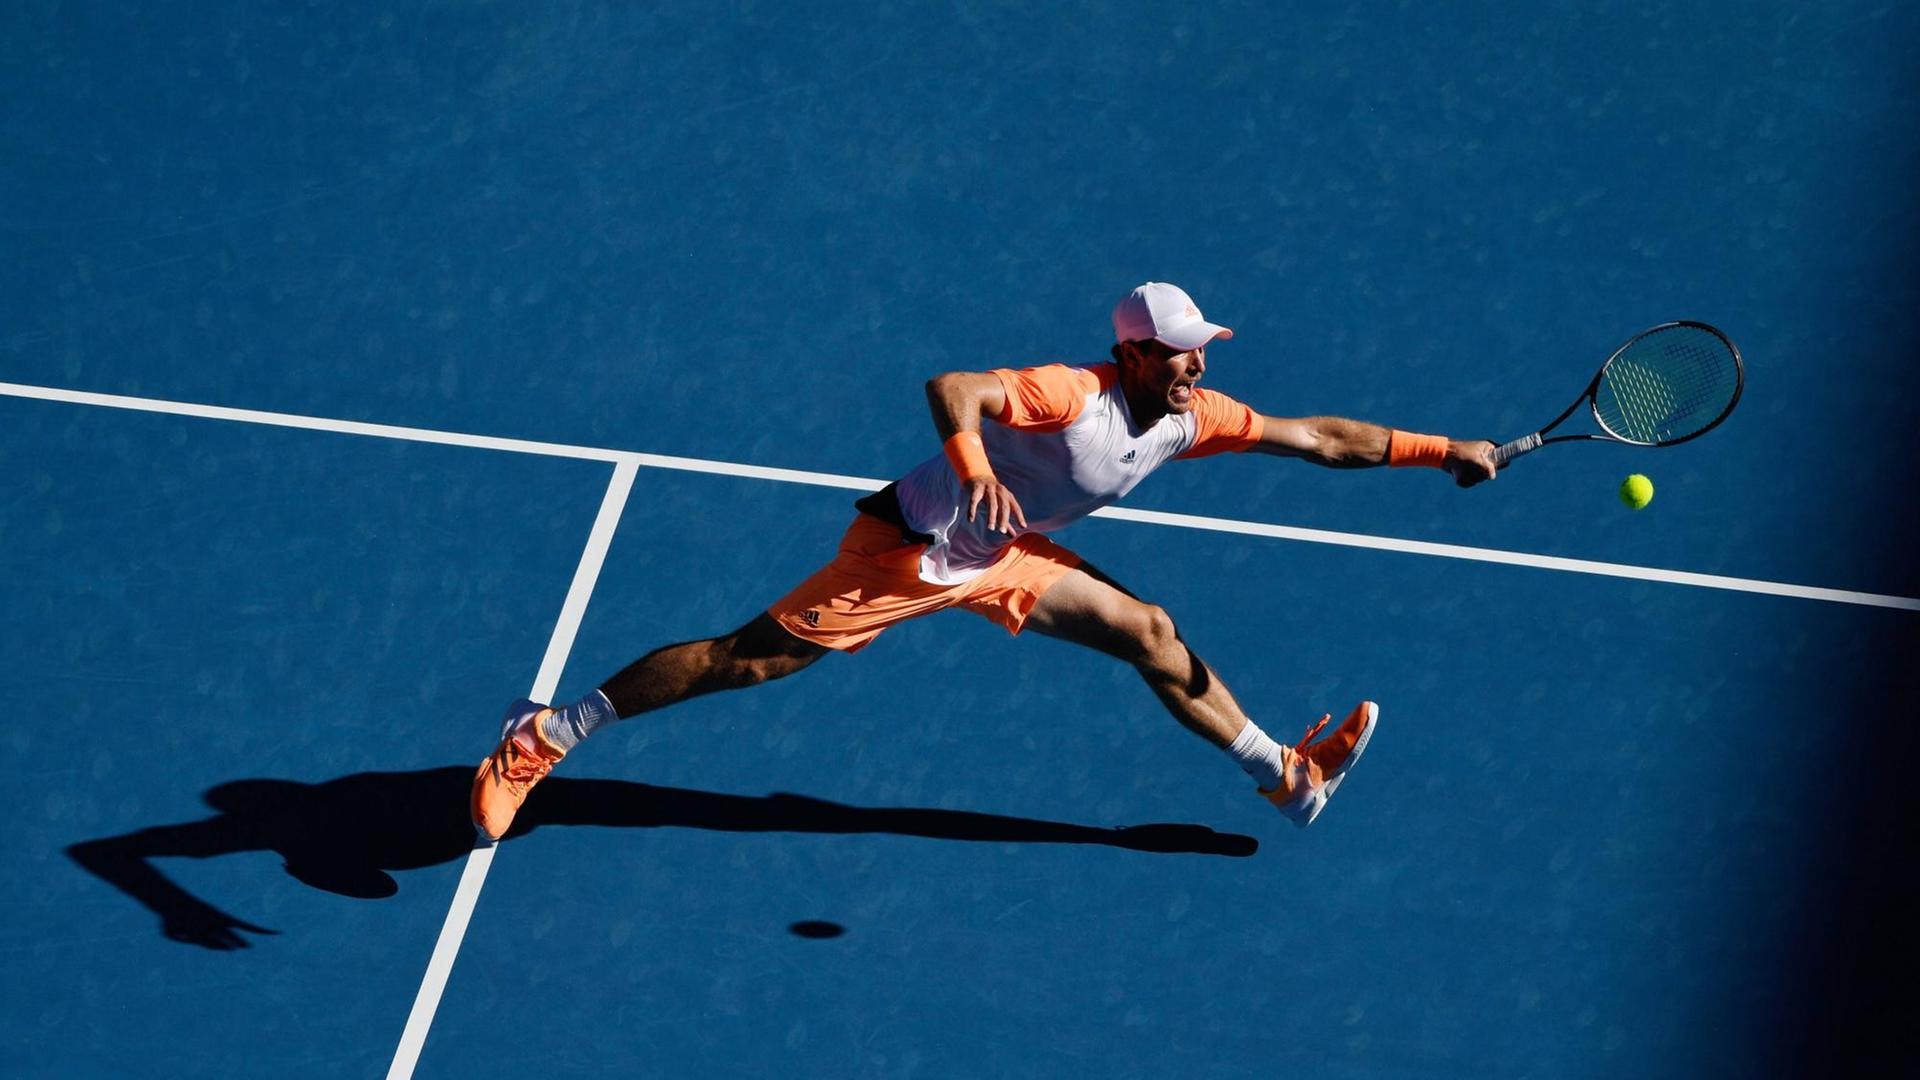 Tennis: Der Deutsche Mischa Zverev besiegte den Weltranglistenersten Andy Murray in der vierten Runde der Australian Open und steht im Viertelfinale.